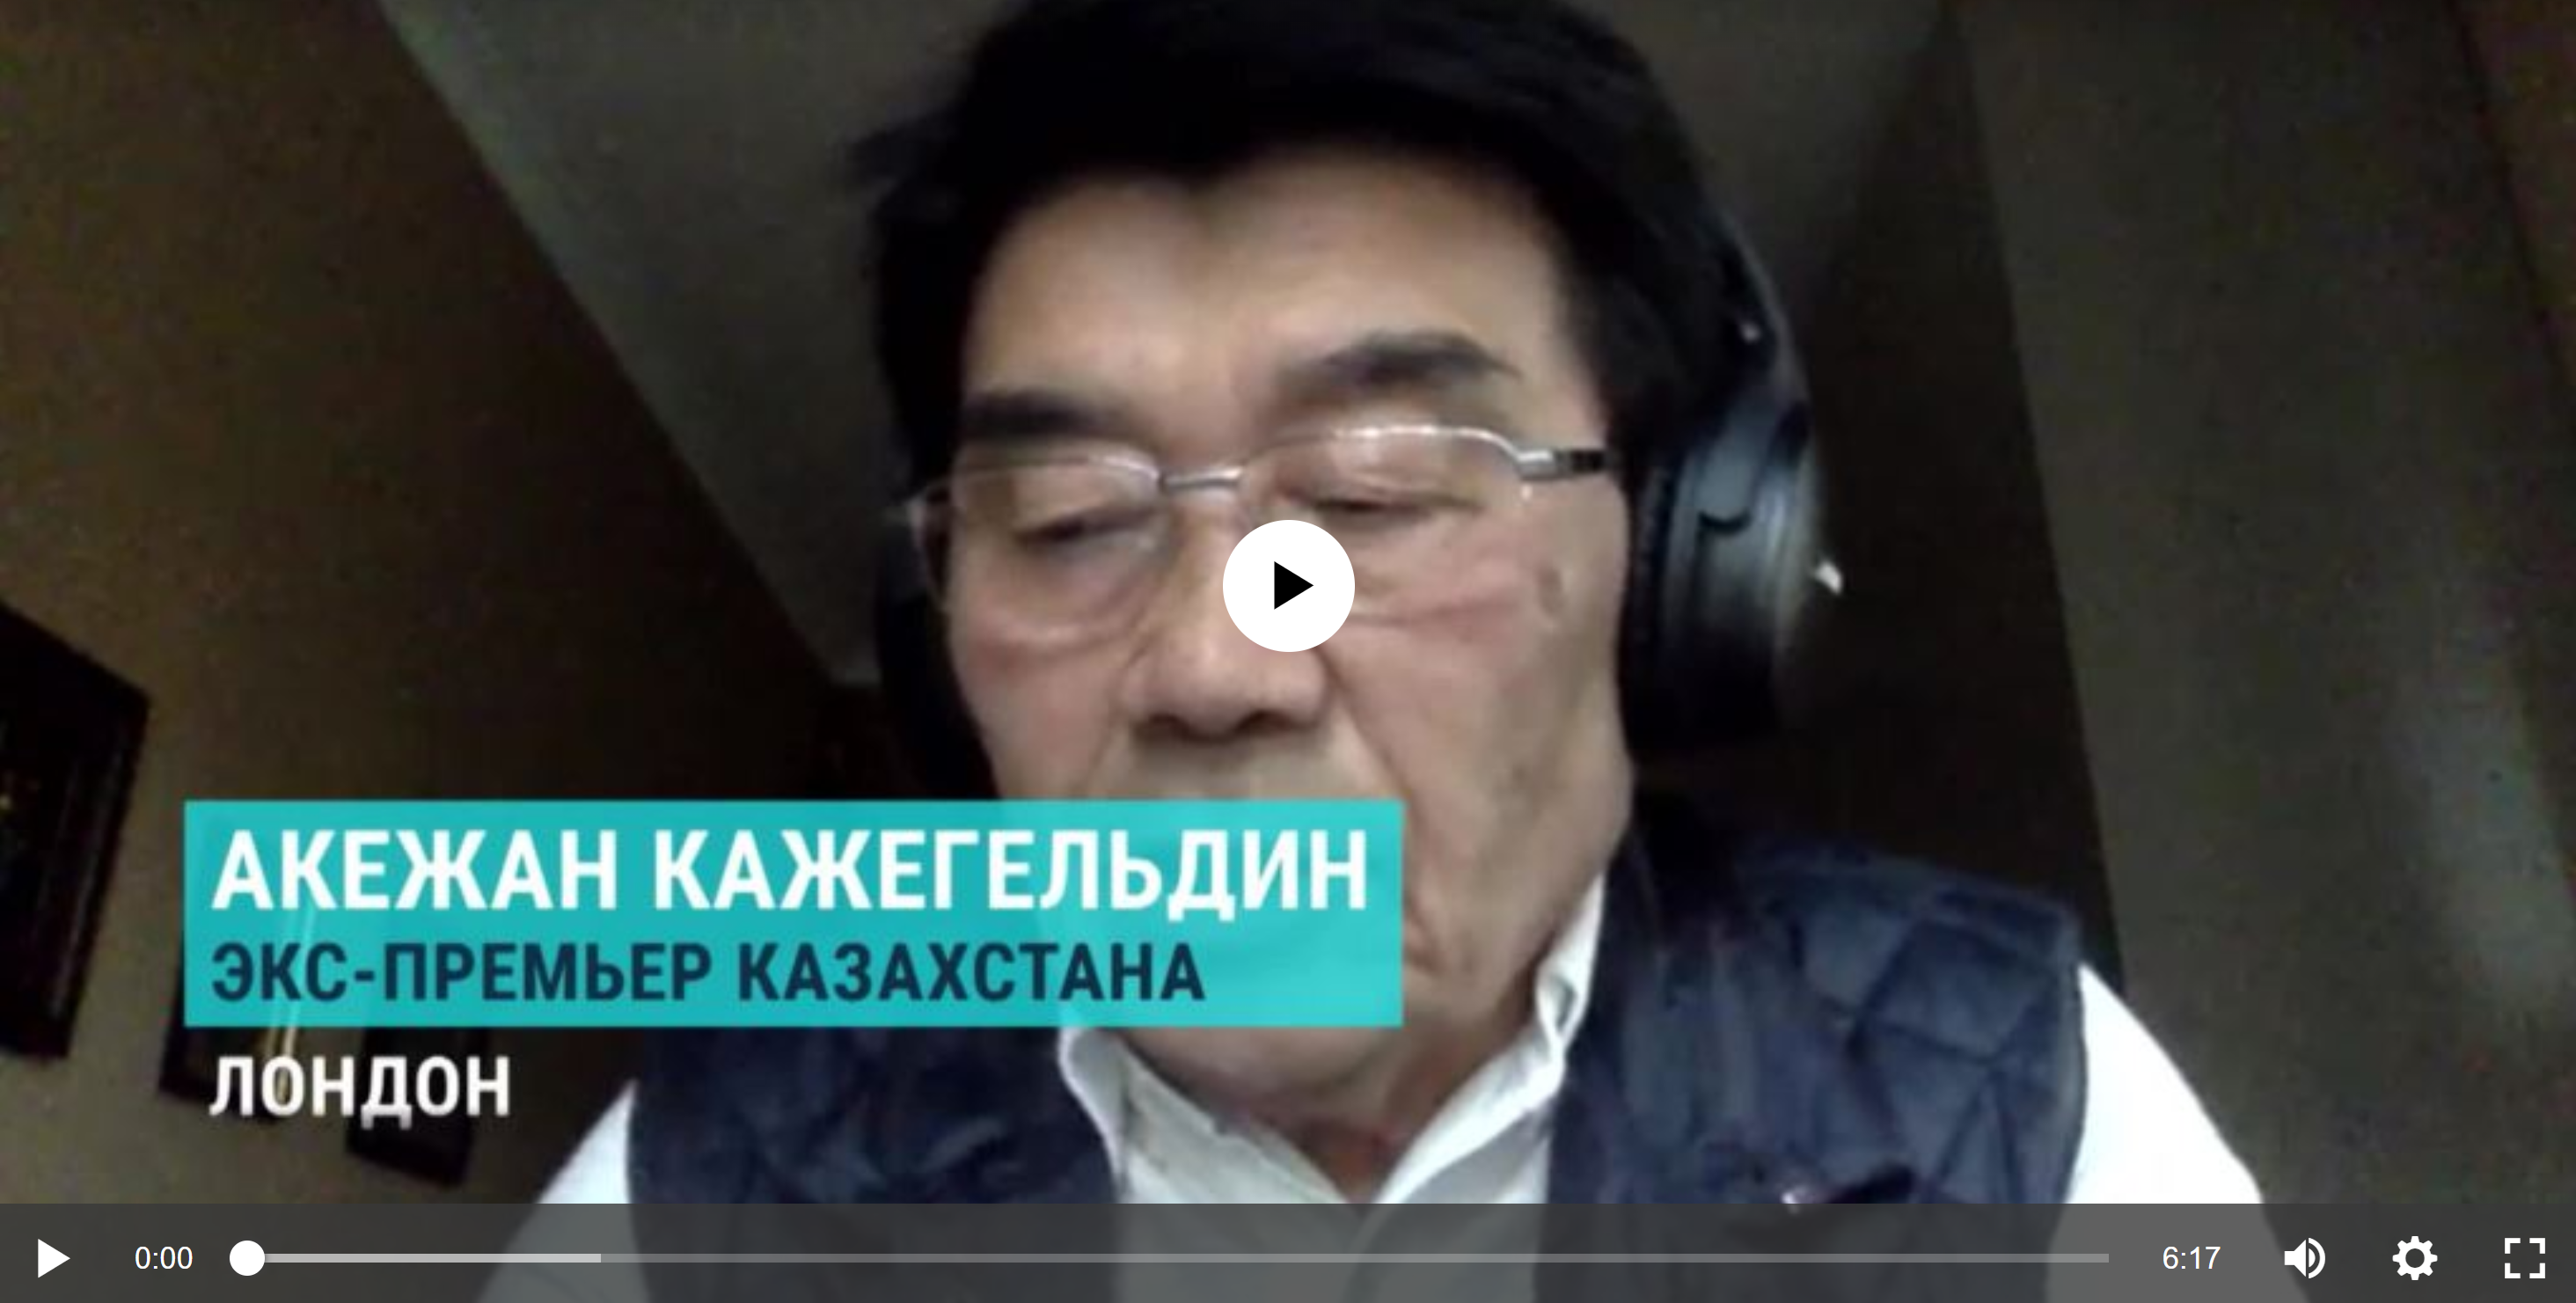 Бывший премьер министр Казахстана Акежан Кажегельдин об итогах выборов